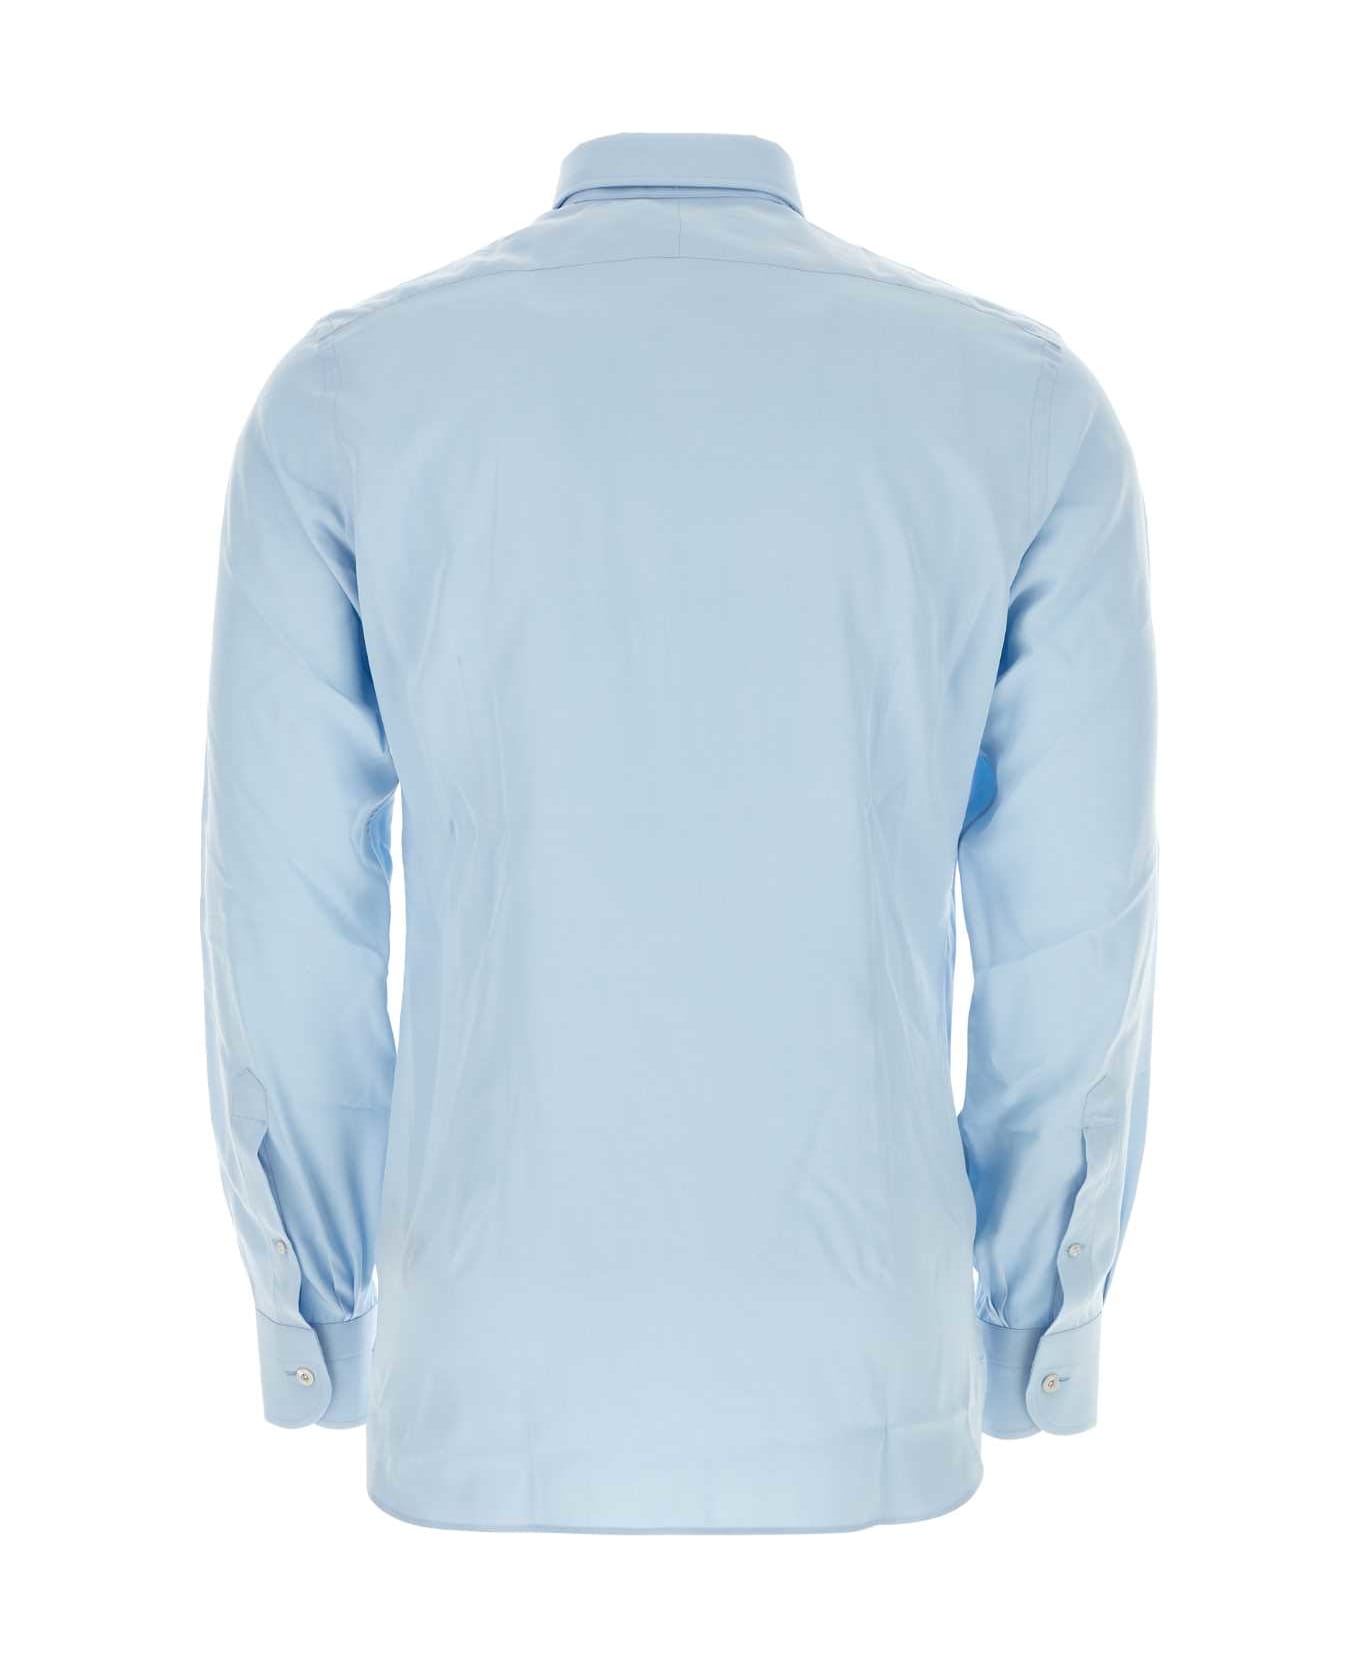 Tom Ford Light Blue Lyocell Blend Shirt - SKYBLUE シャツ